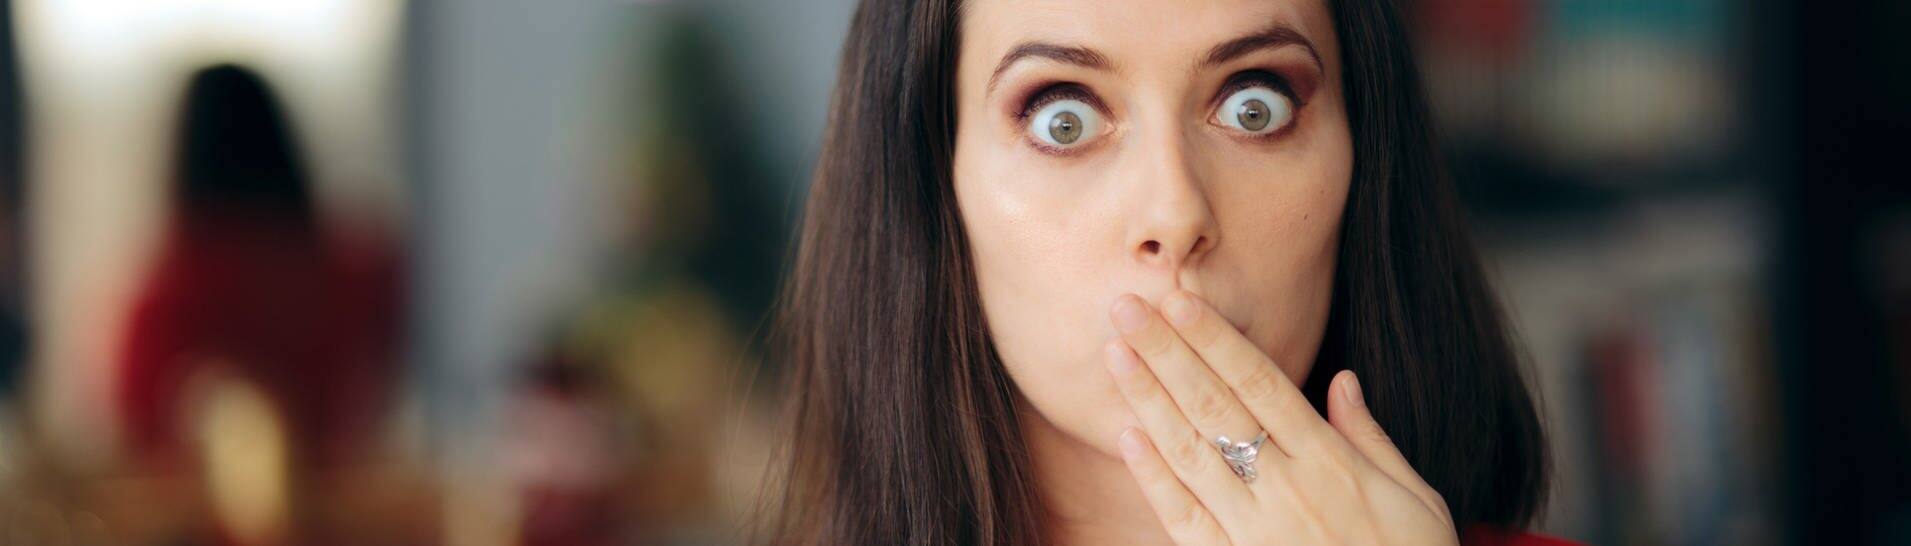 Frau mit erschrockenem Blick hält sich den Mund zu (Foto: Adobe Stock, nicoletaionescu)